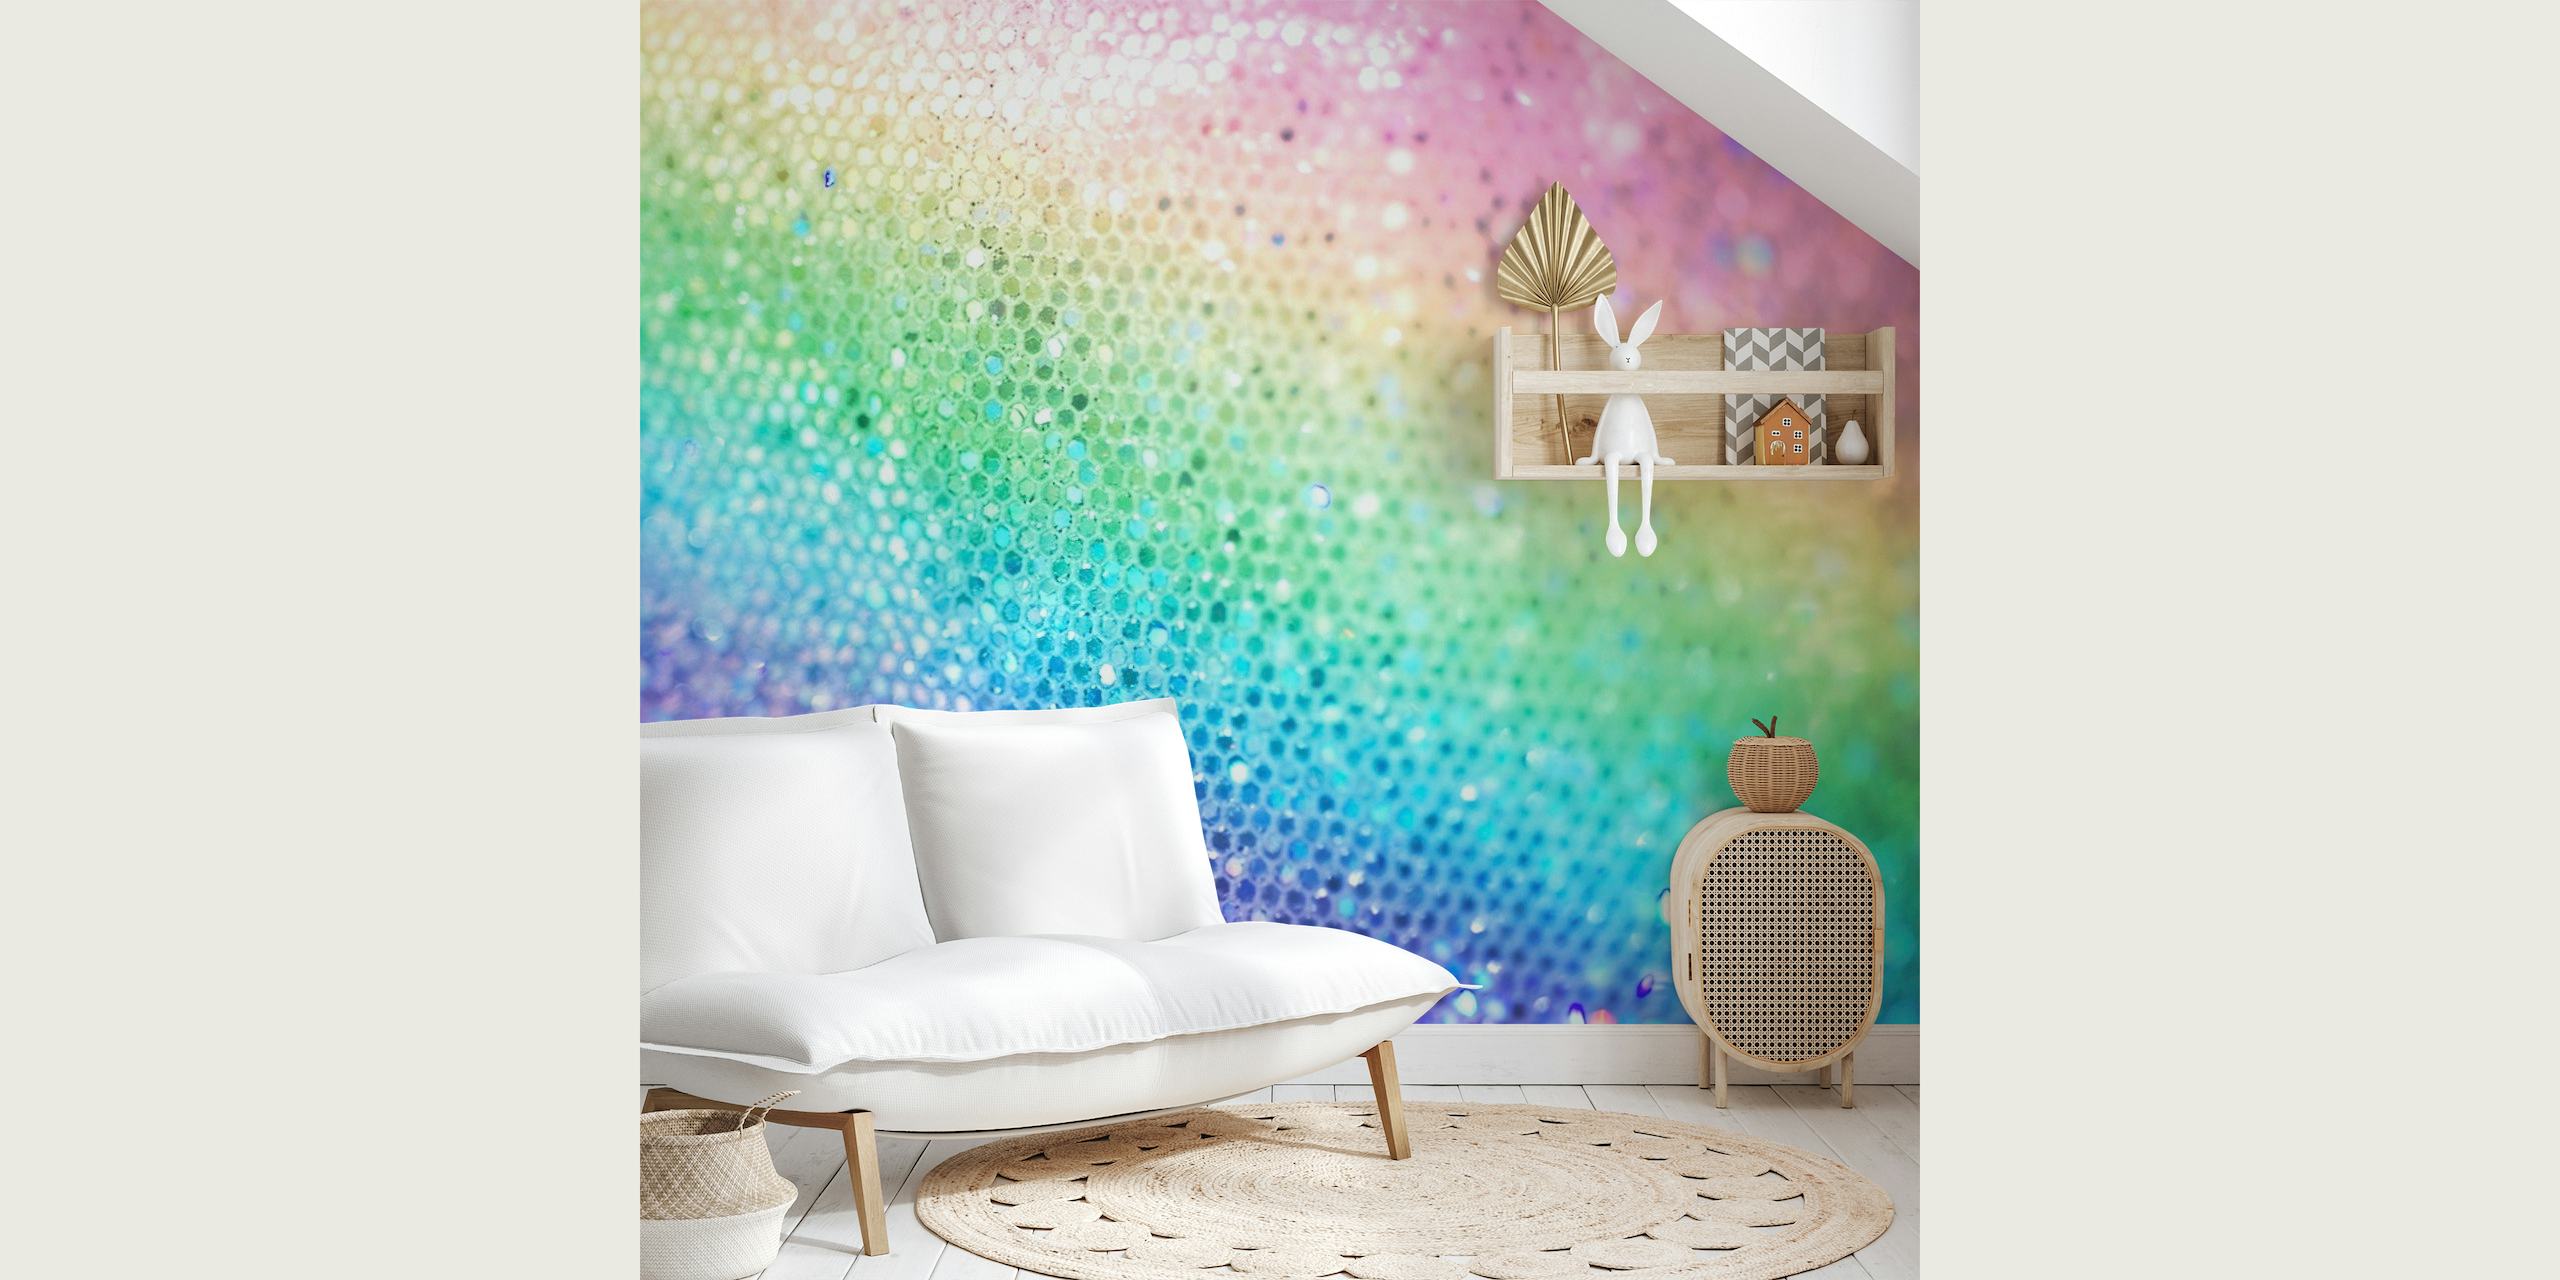 Fotomural vinílico de parede colorido Rainbow Princess Glitter com efeito de textura brilhante